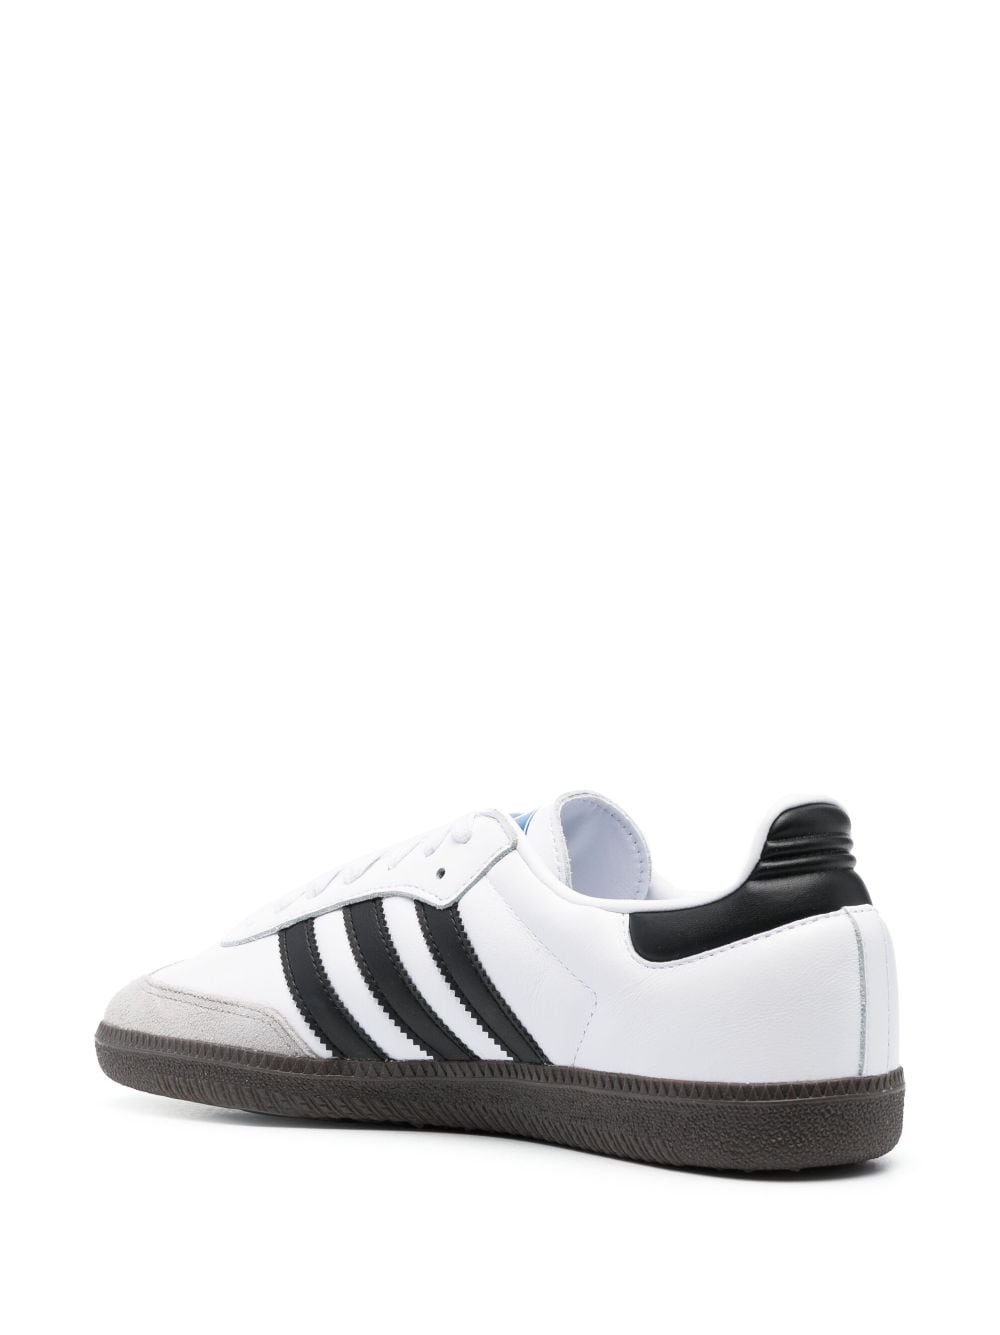 Samba OG "White/Black" sneakers - 3